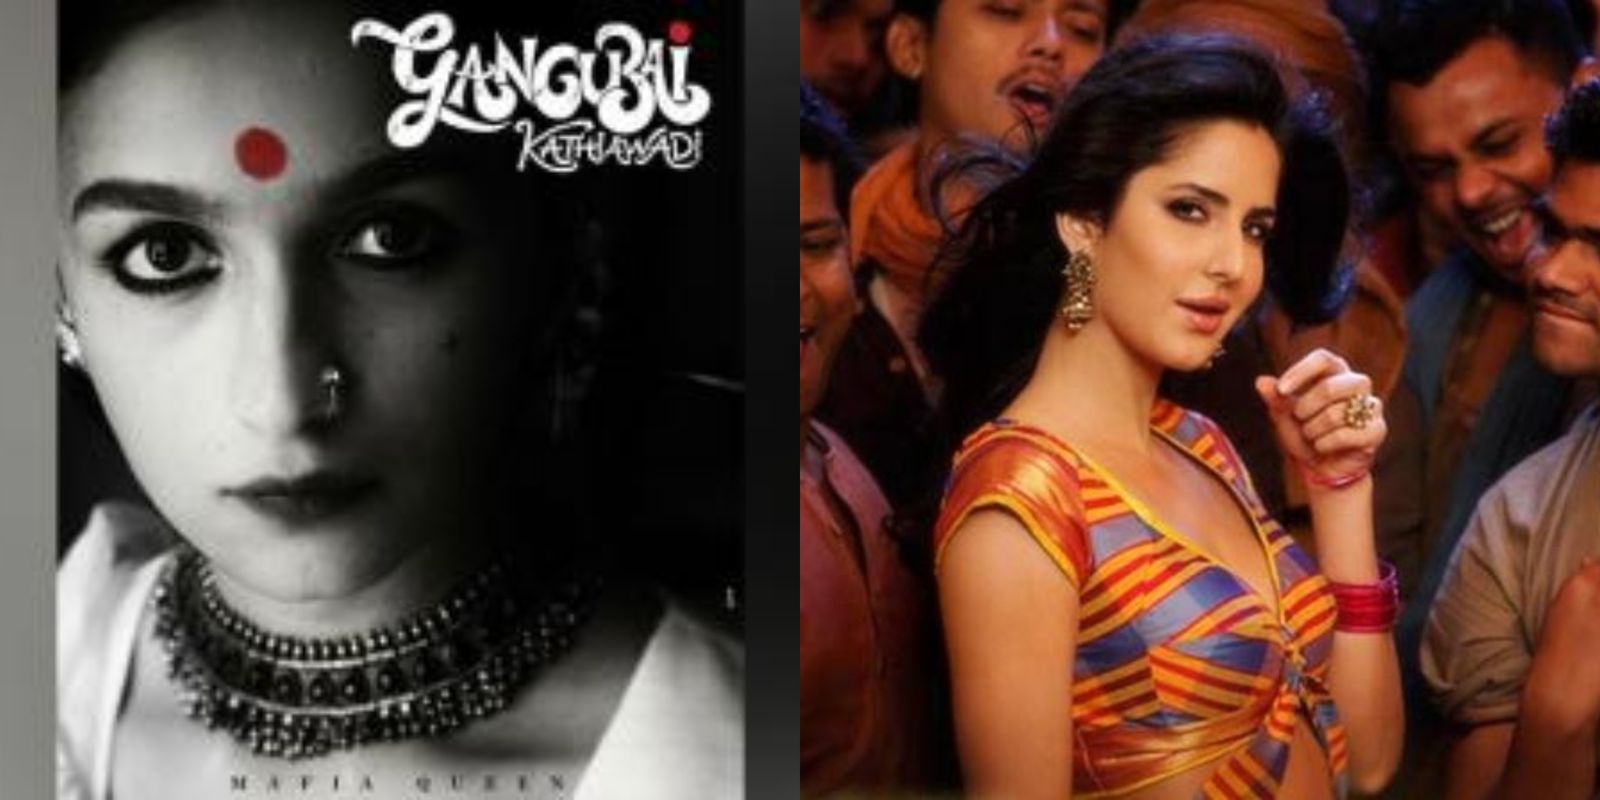 आलिया की फिल्म 'गंगूबाई काठियावाड़ी' में कैटरीना करेंगी धमाकेदार डांस नंबर?